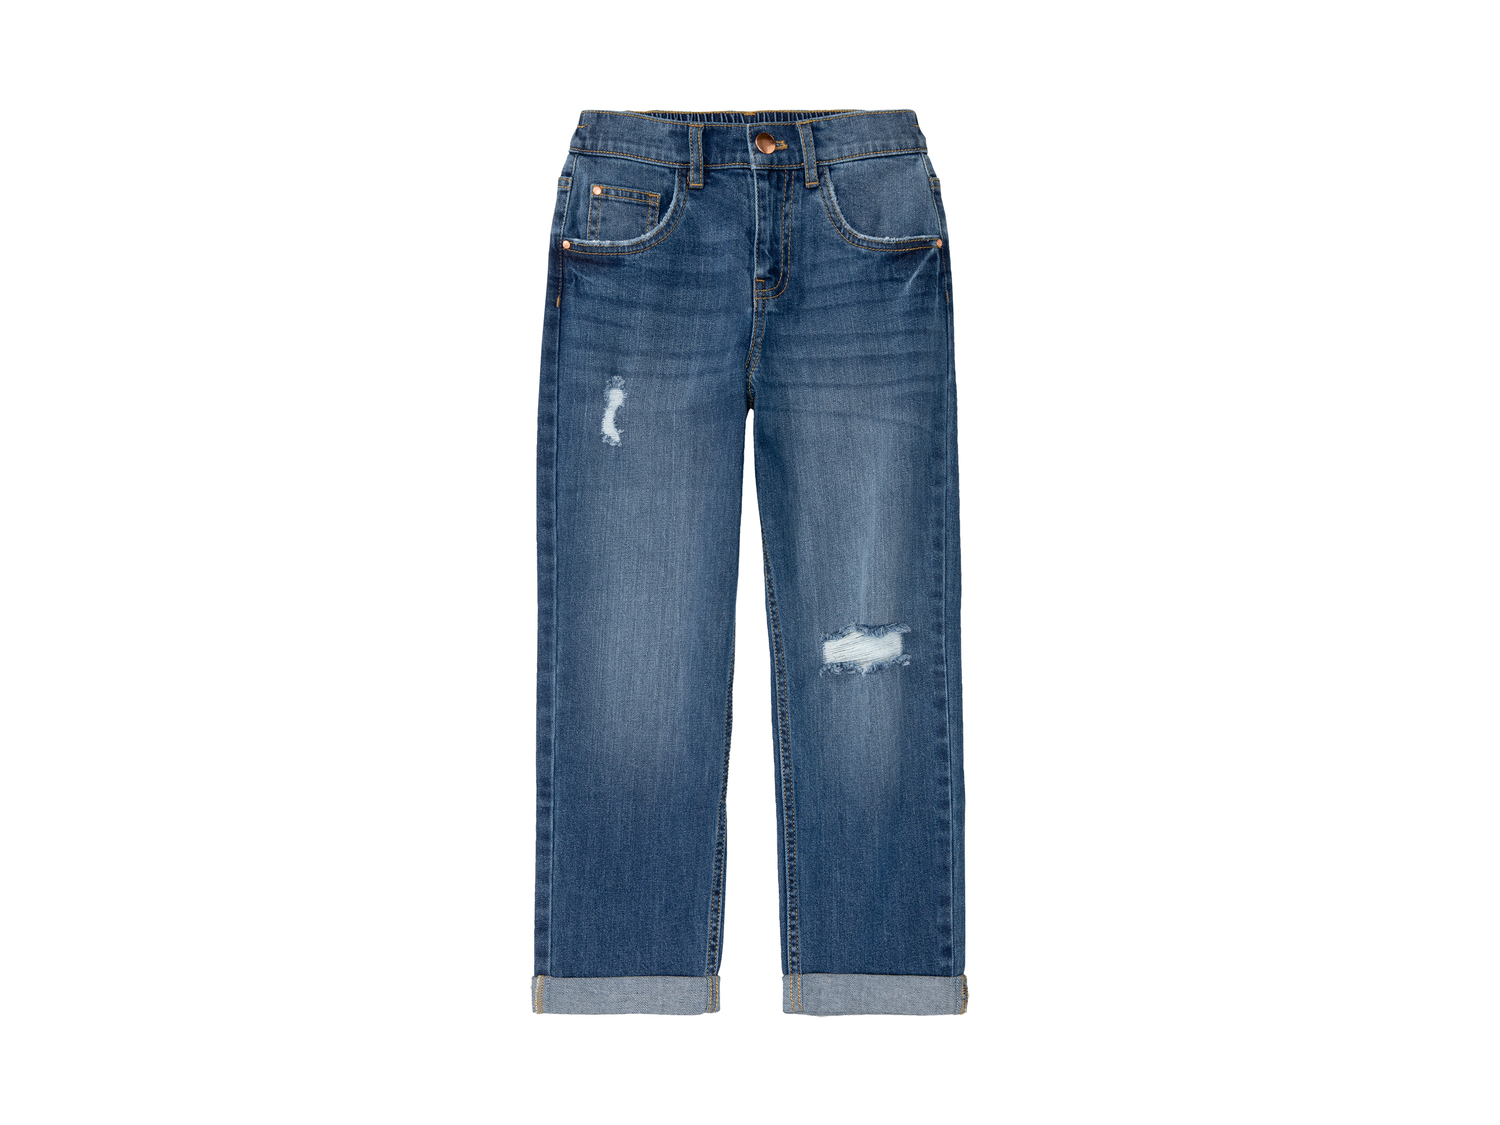 Jeans da bambina Pepperts_nero, prezzo 9.99 &#8364; 
Misure: 6-14 anni
Taglie ...